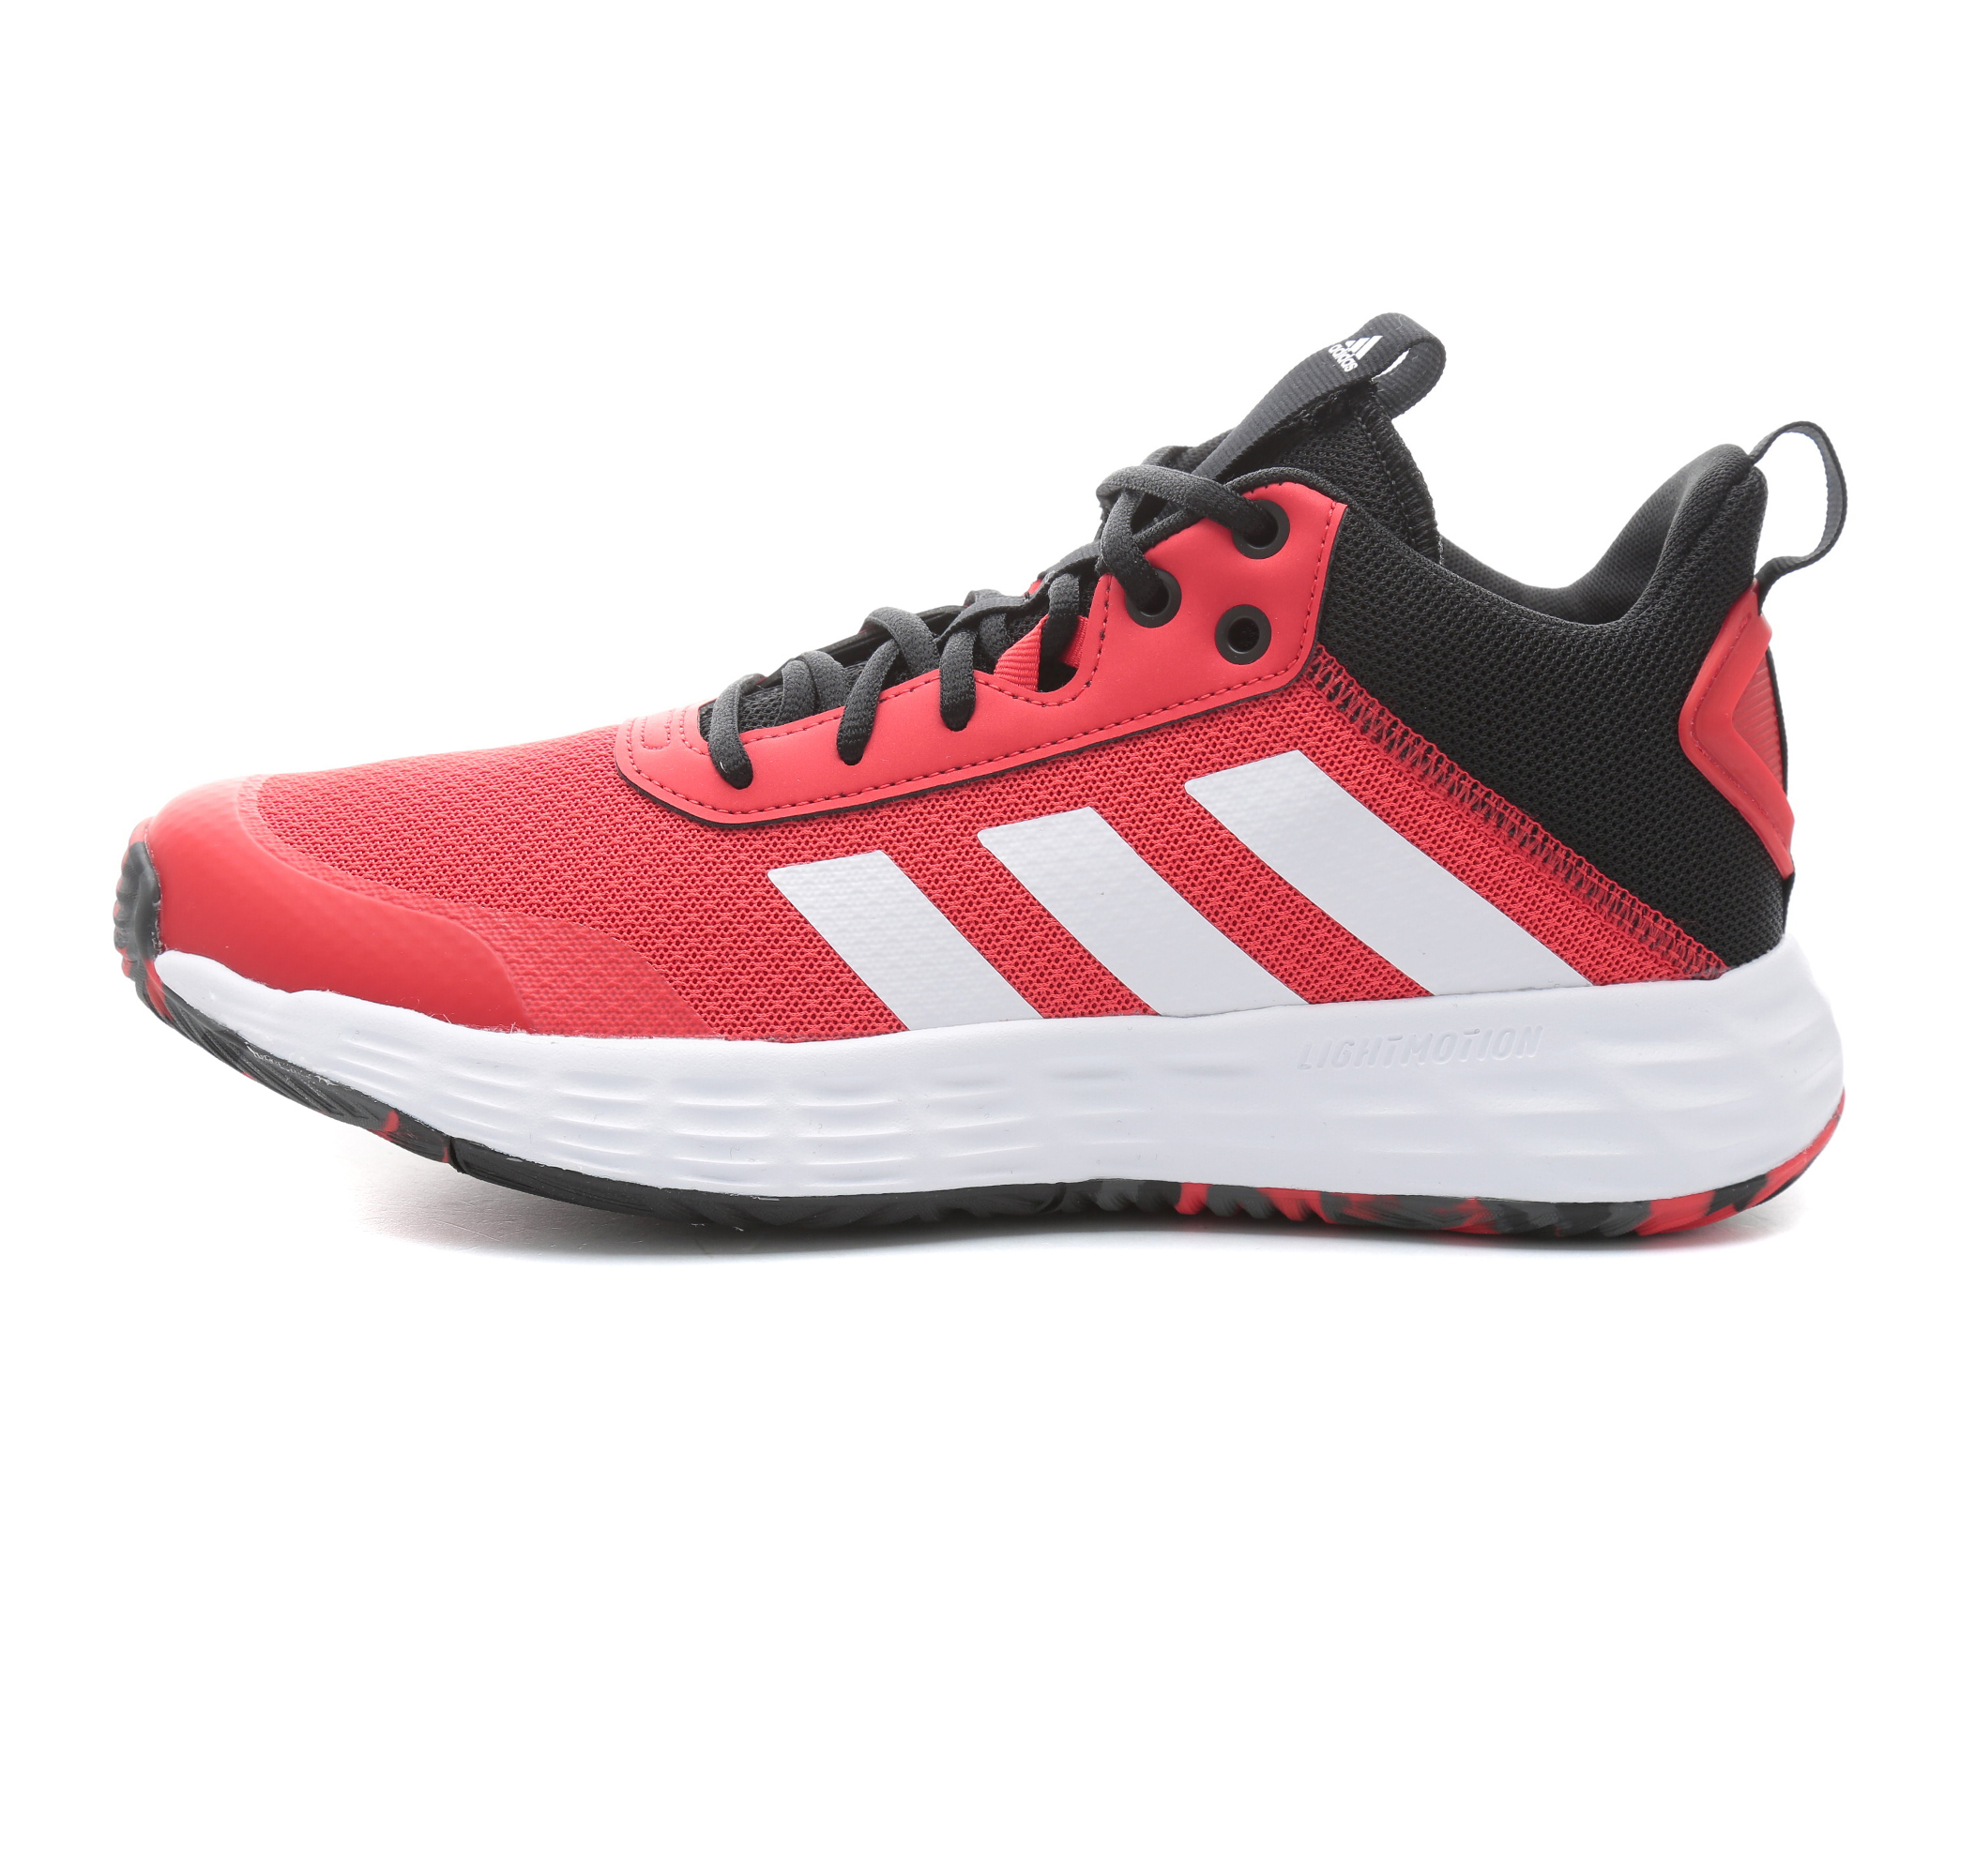 adidas Ownthegame 2.0 Erkek Spor Ayakkabı Kırmızı